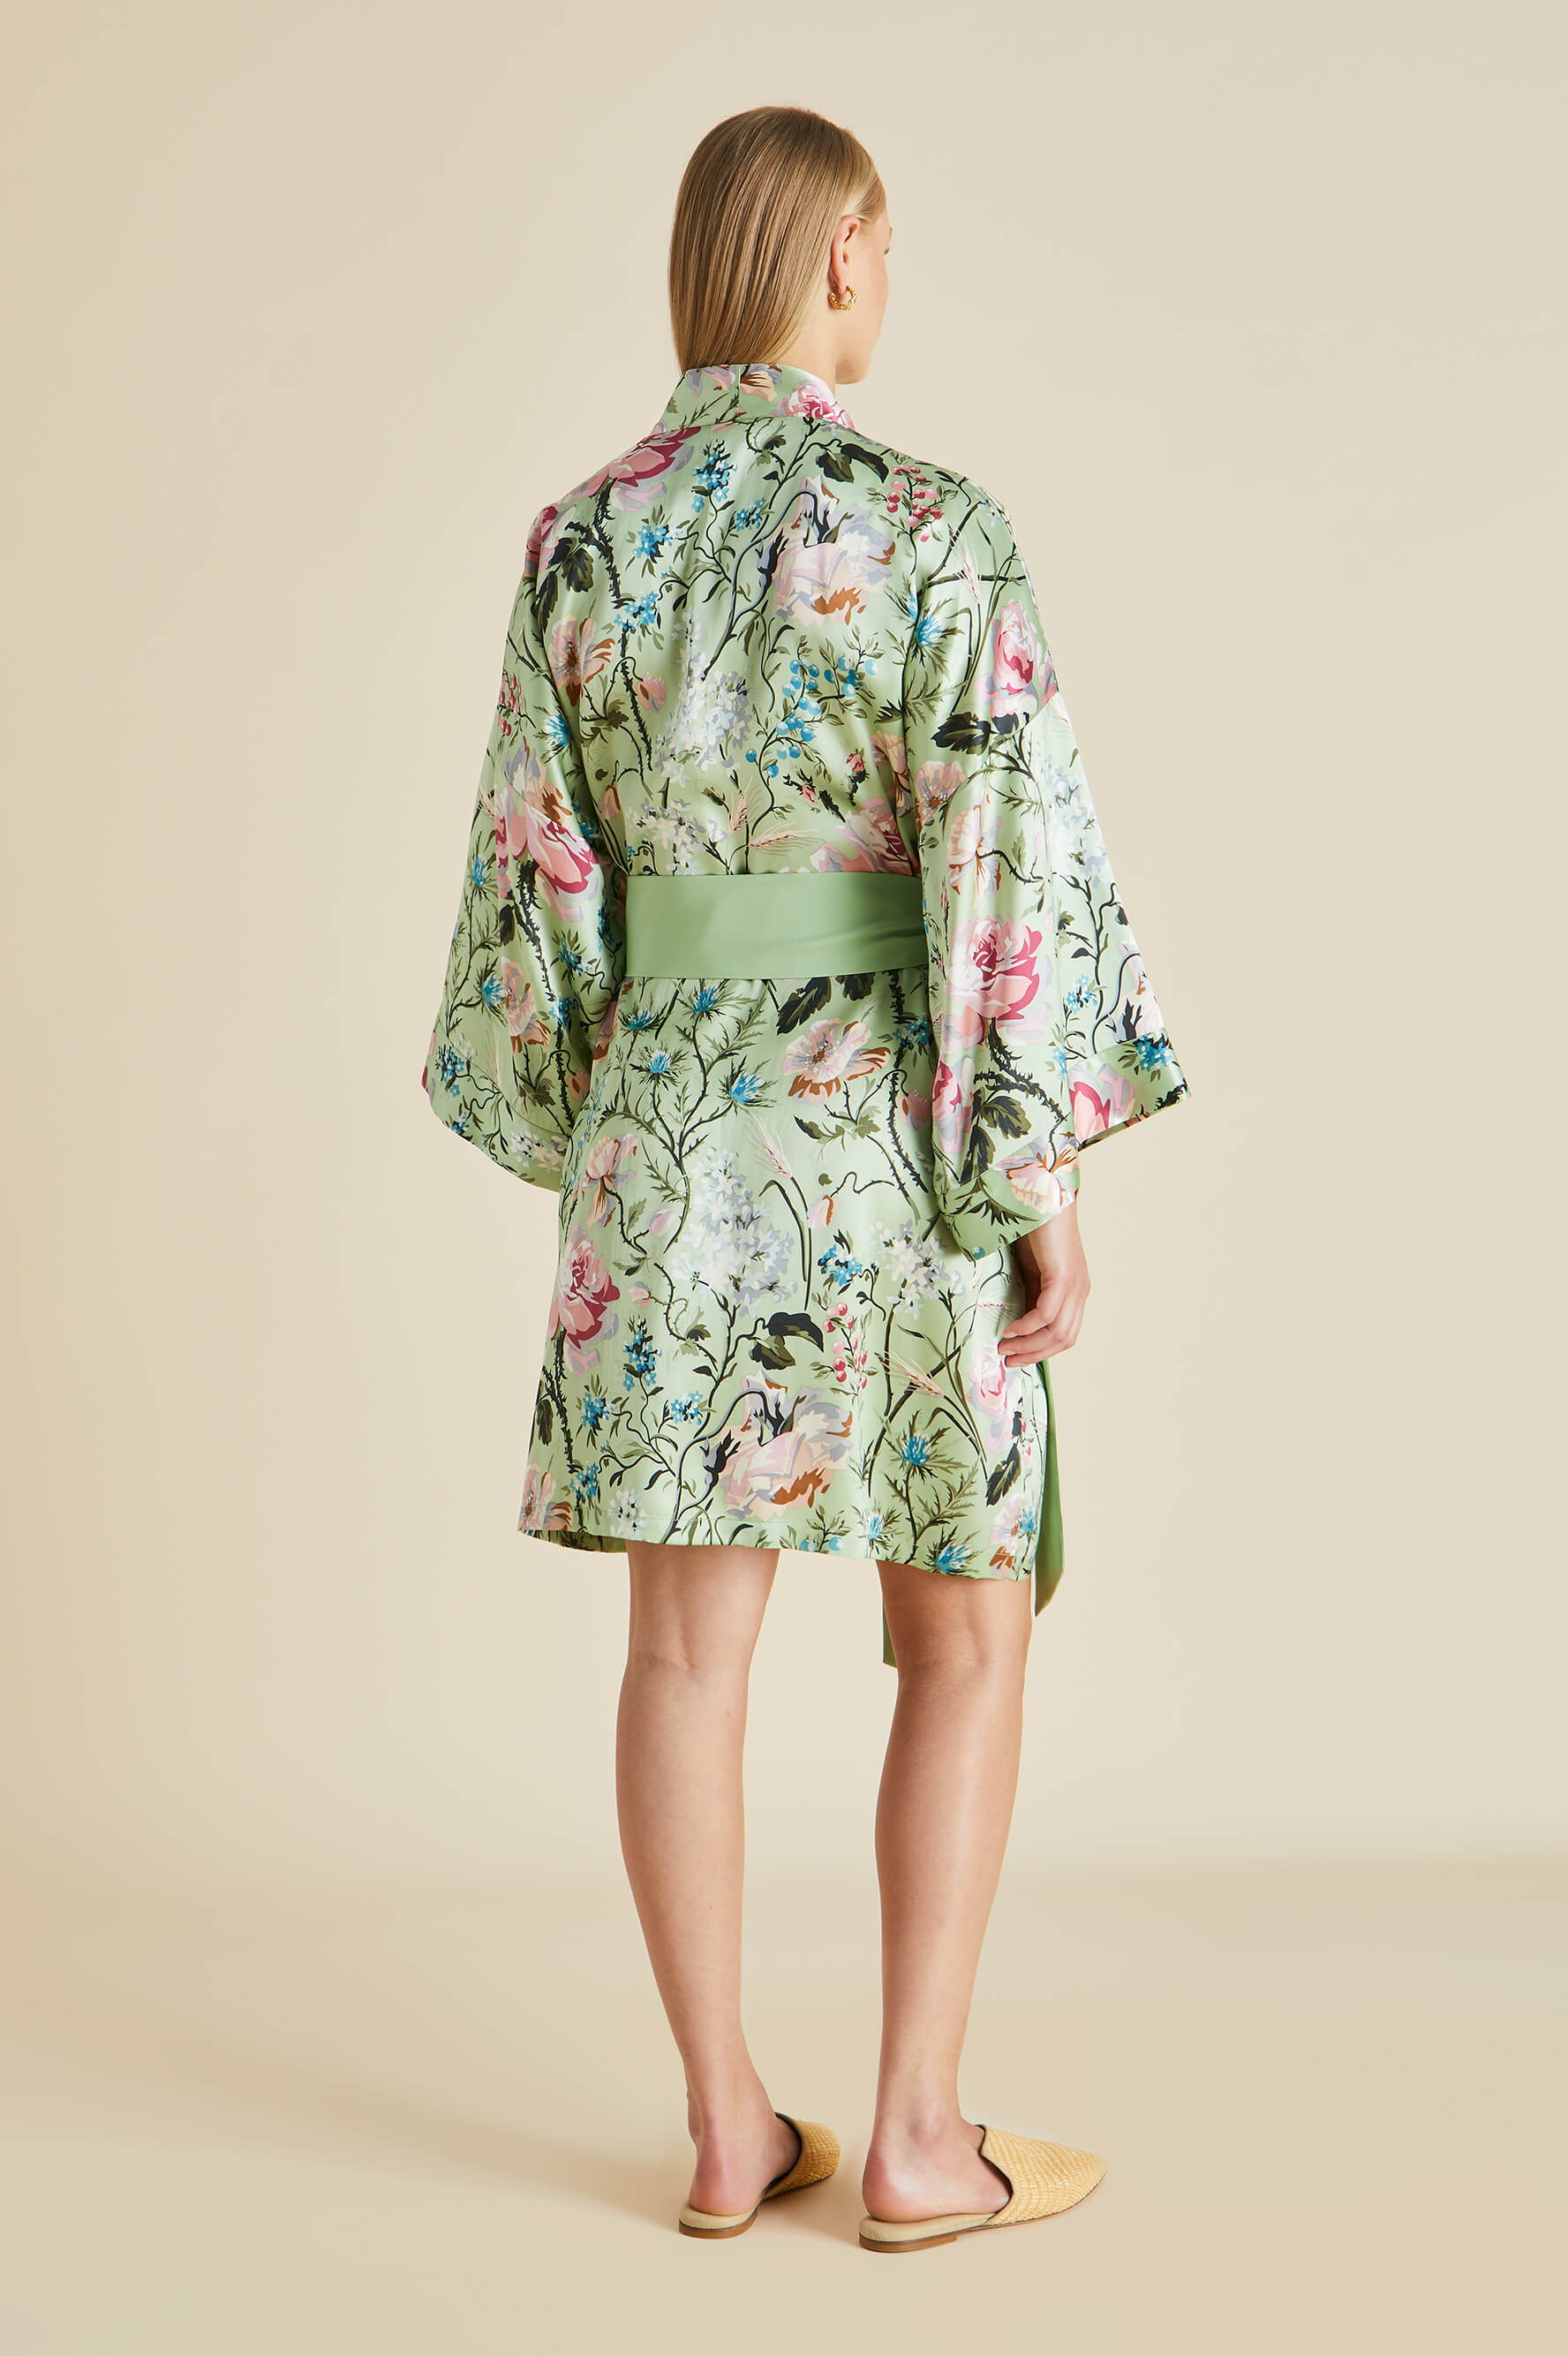 Mimi Effie Green Floral Robe in Silk Satin